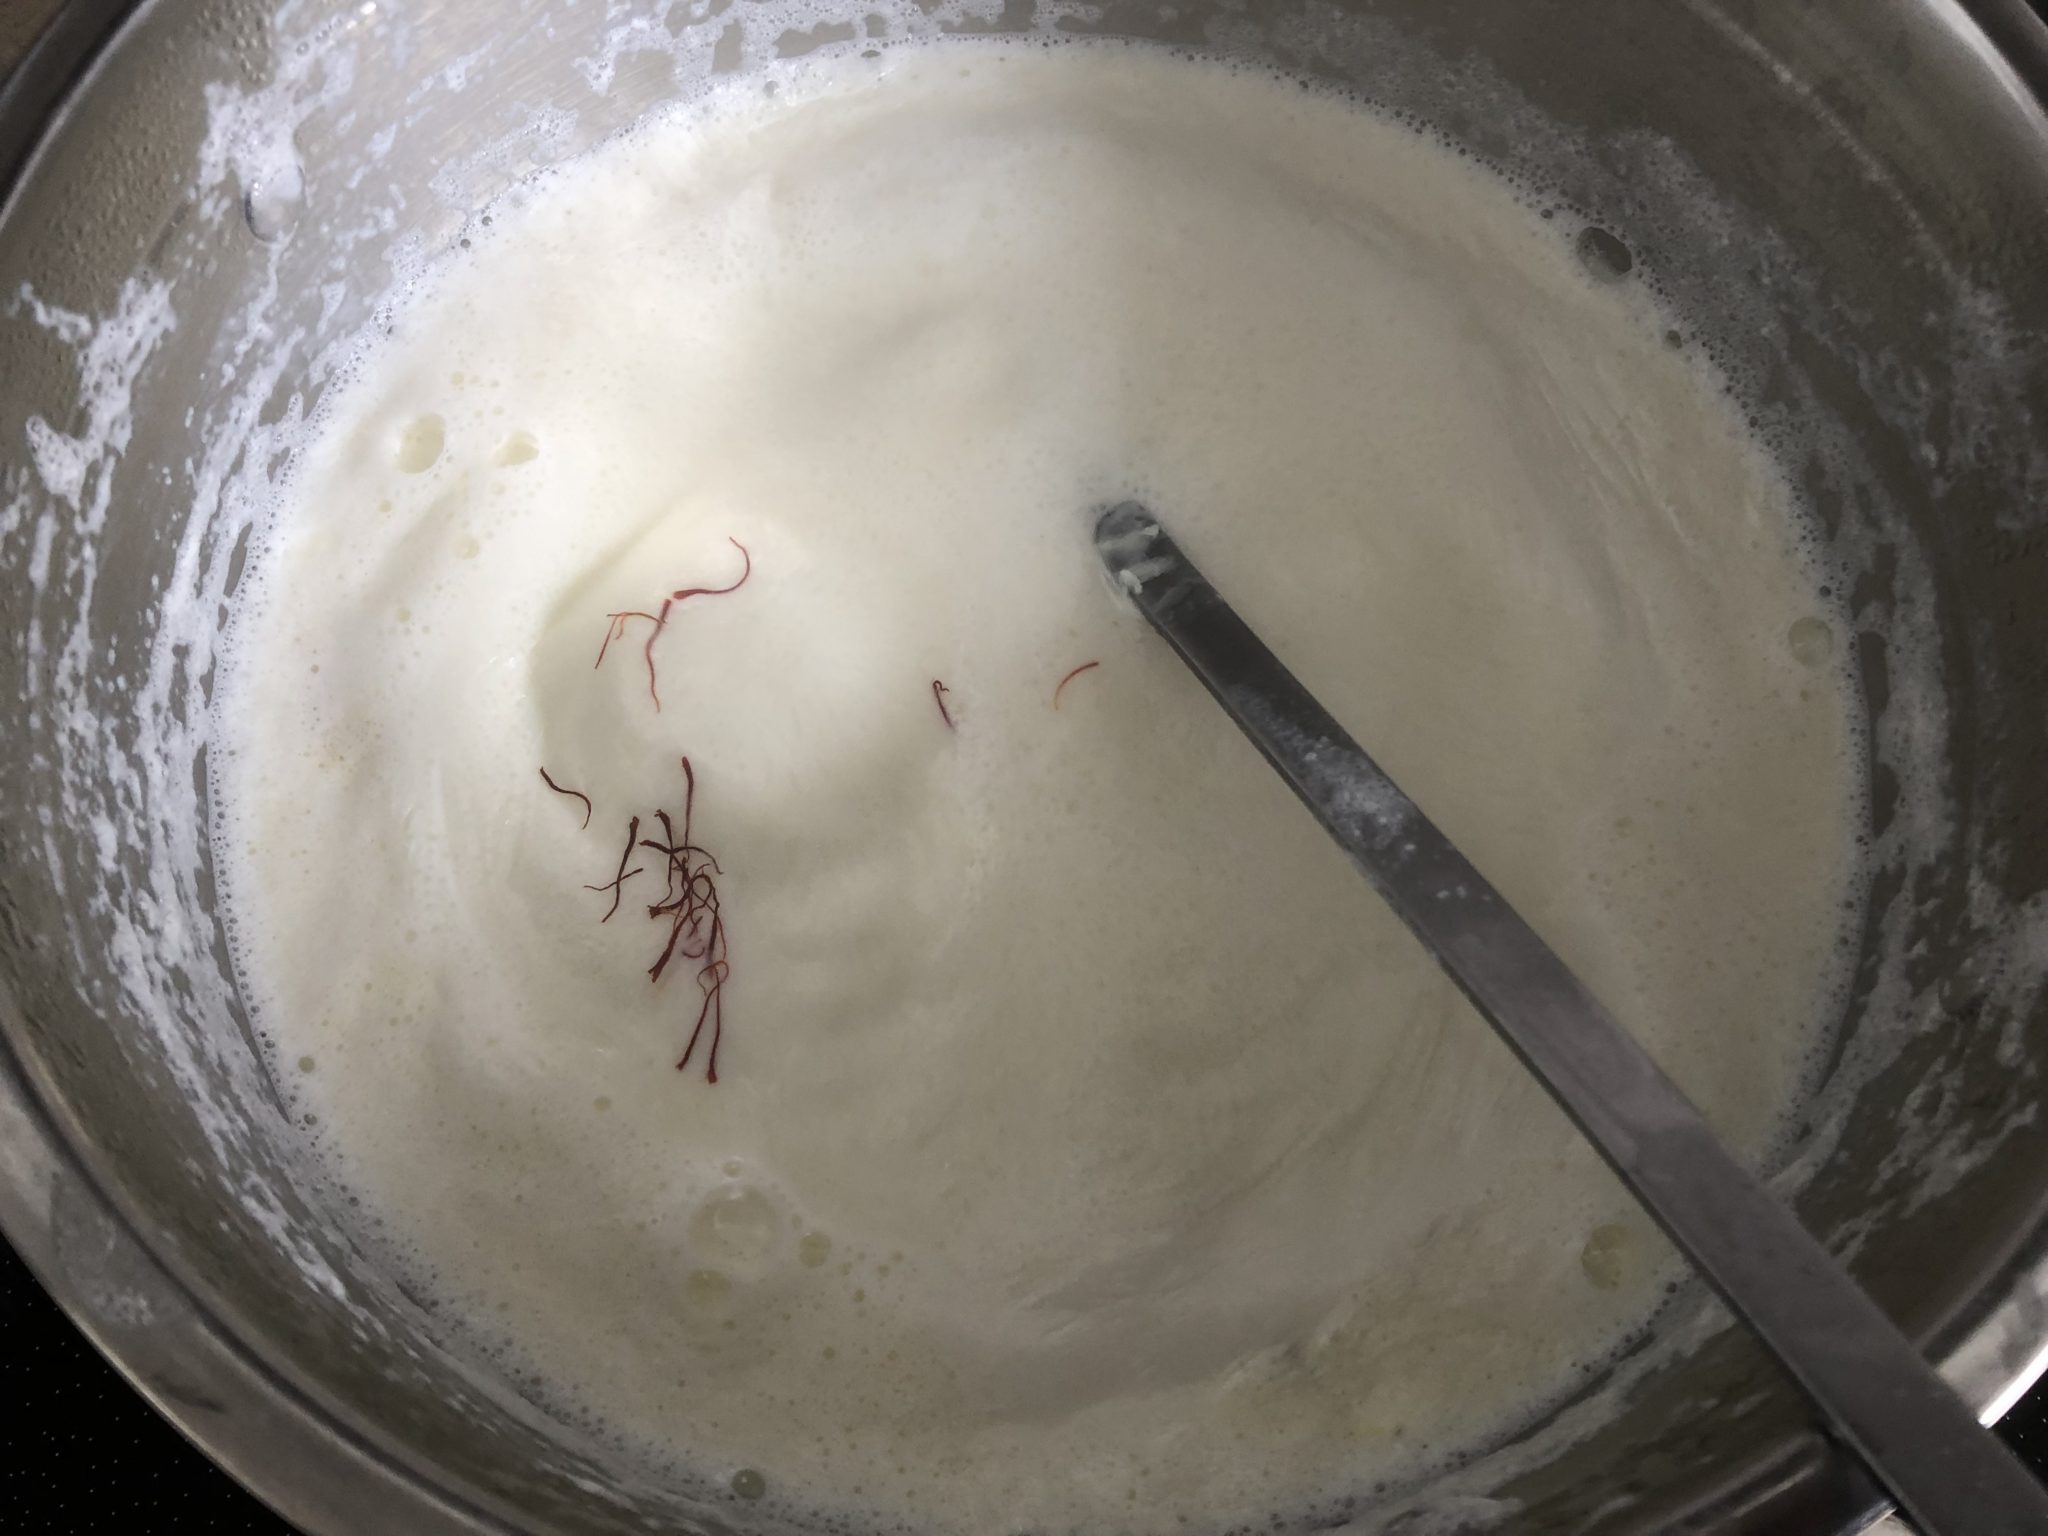 Anguri Rabdi (Rabri) /Cottage Cheese Balls In Thickened Milk